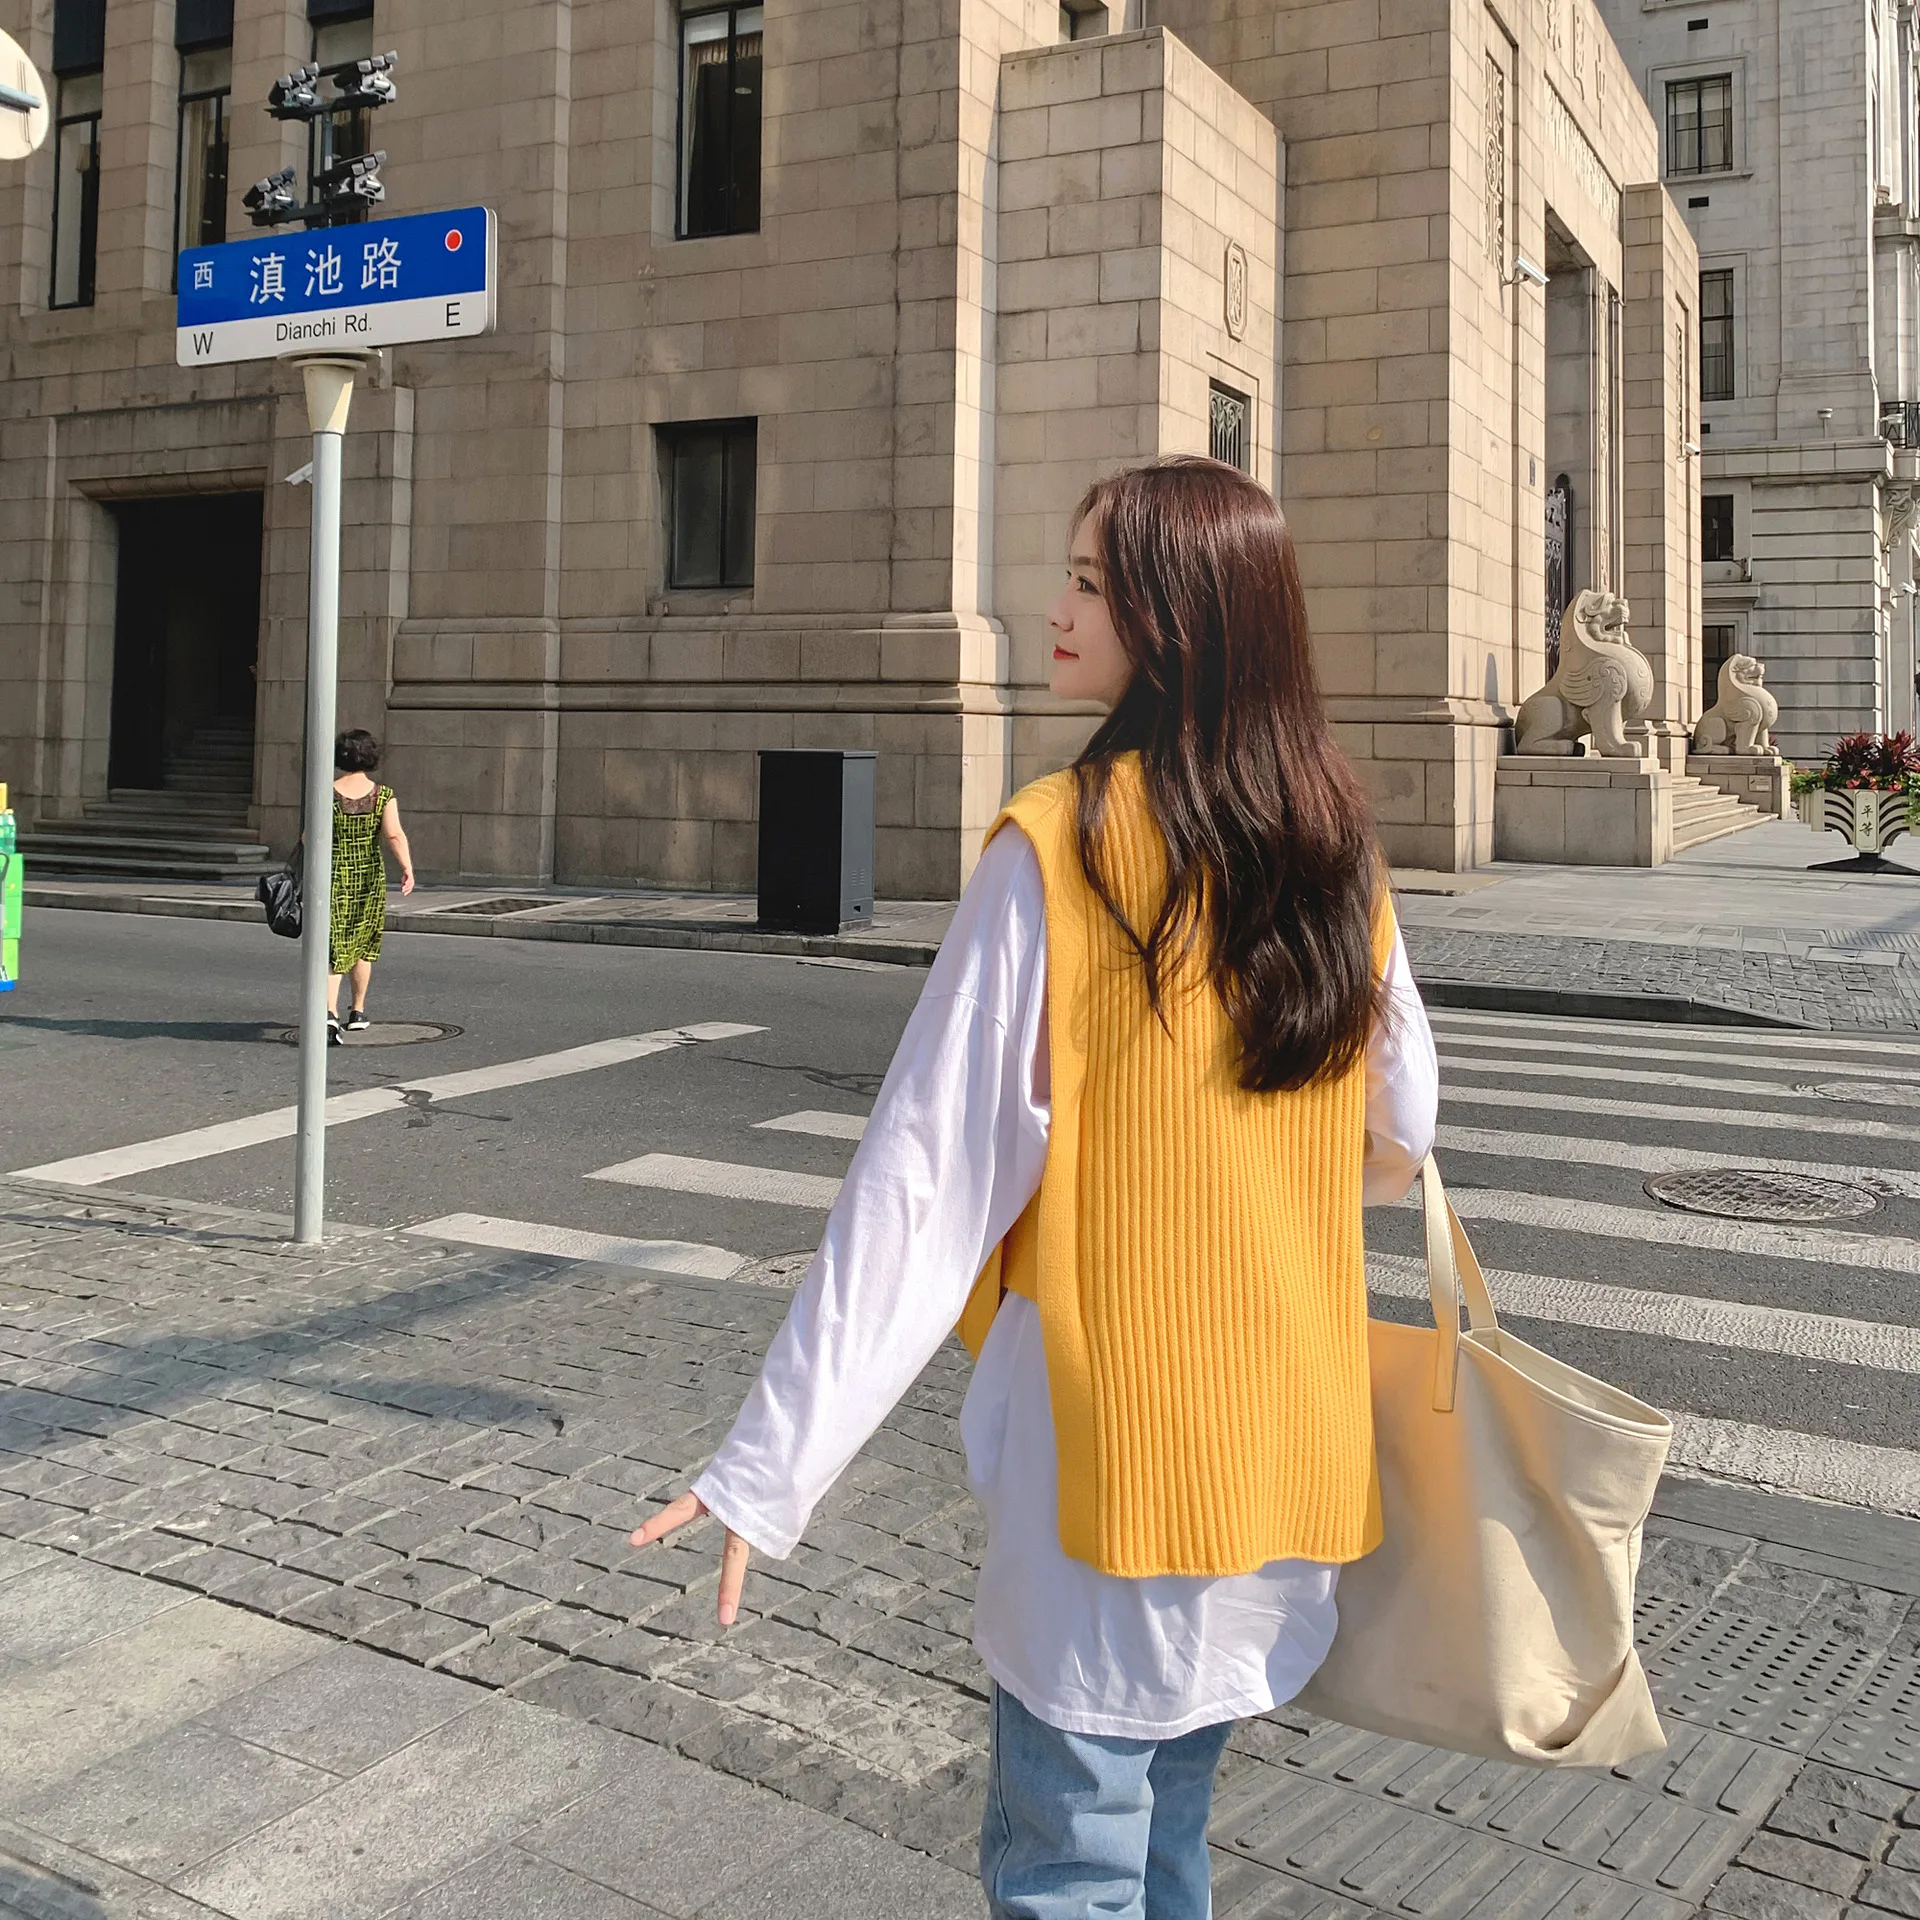 Armor Edgy женский свитер Корейская версия колледжа Ветер без рукавов Топ вязаный свитер осенний вязаный жилет носить - Цвет: Yellow